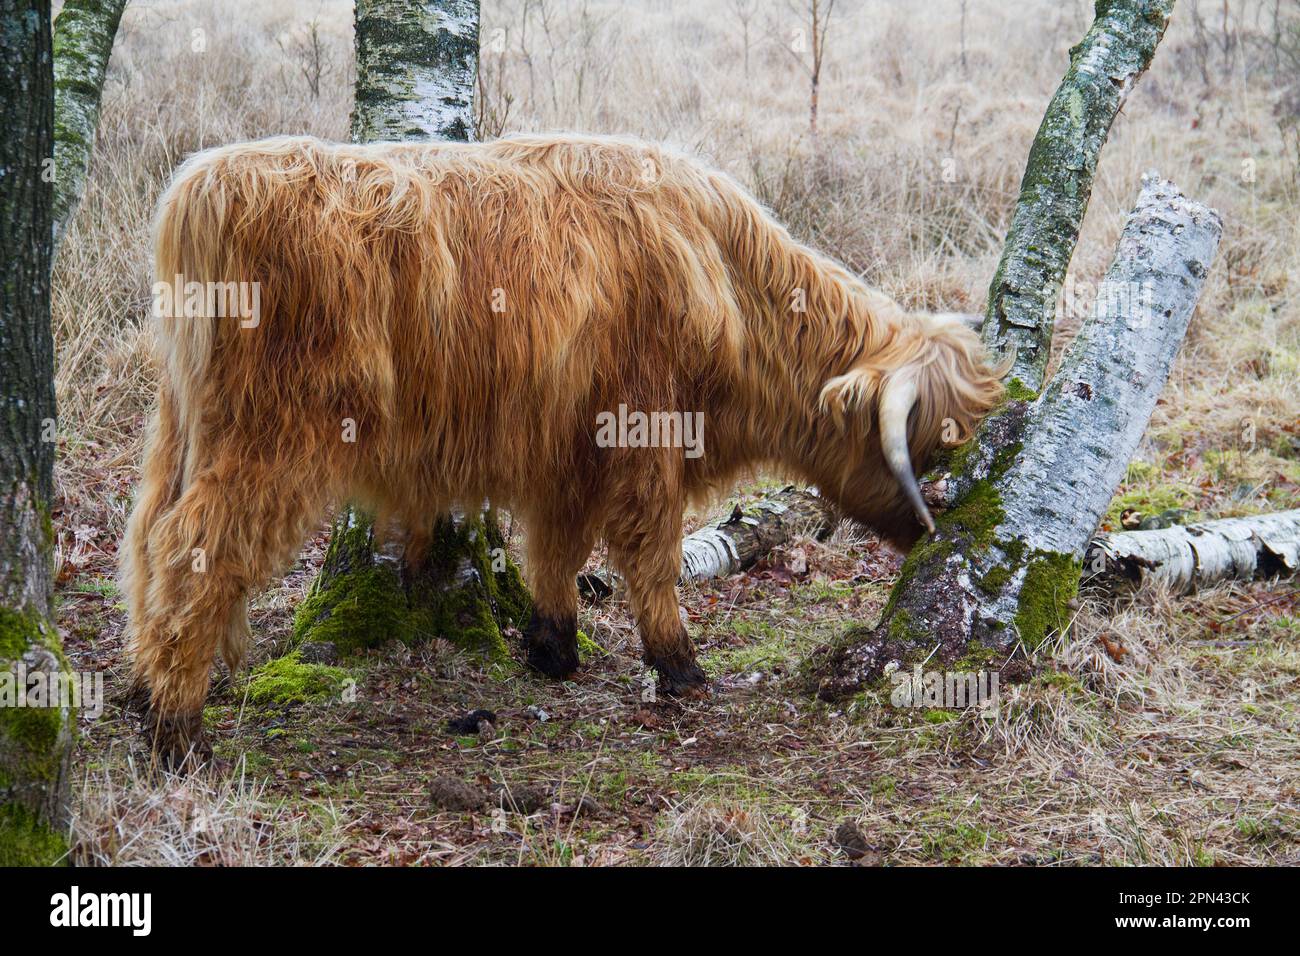 La vache écossaise de montagne aux longs cheveux rouges et longues cornes frotte sa tête contre un arbre Banque D'Images